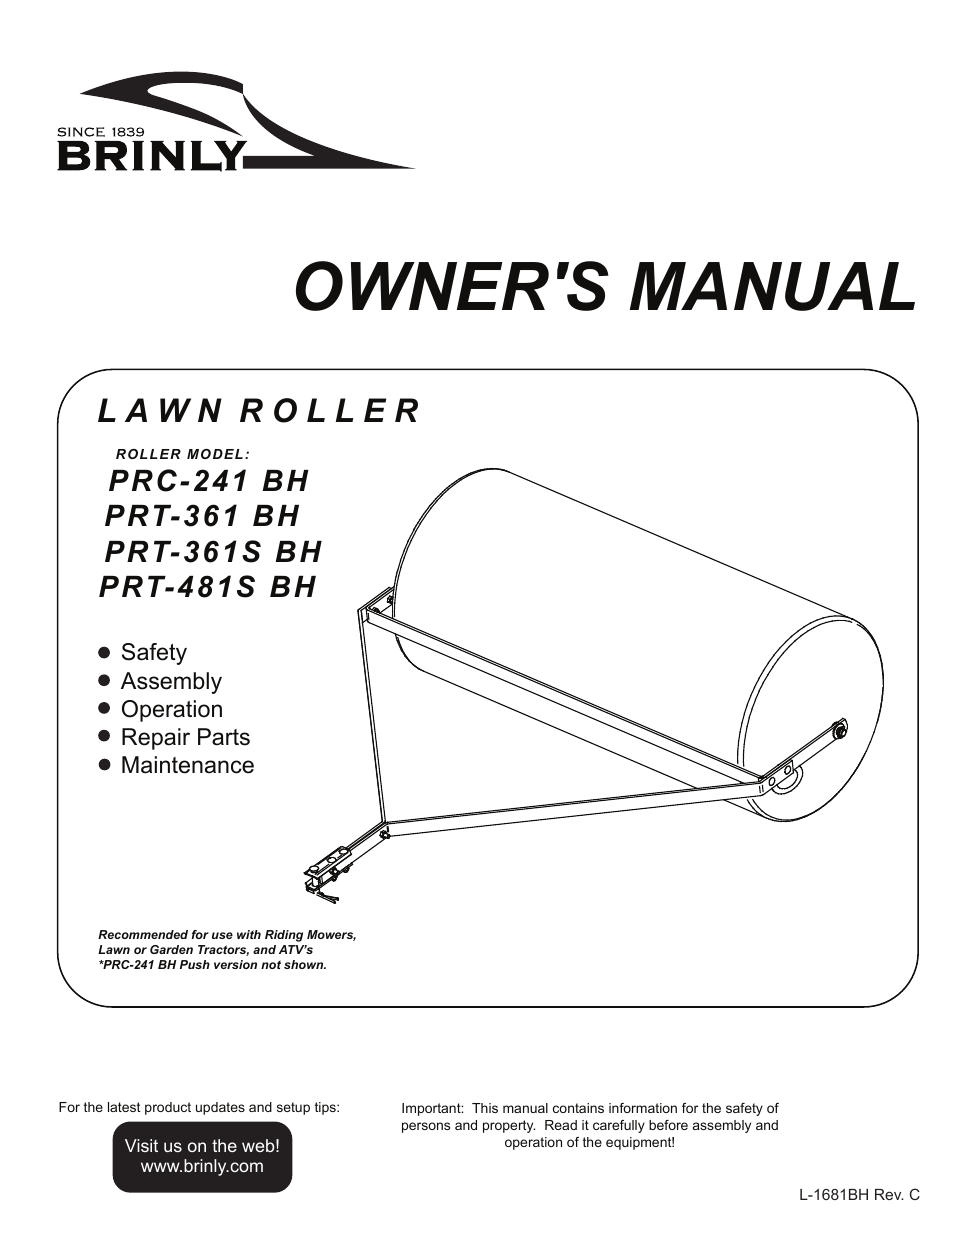 PRT-481S Lawn Roller